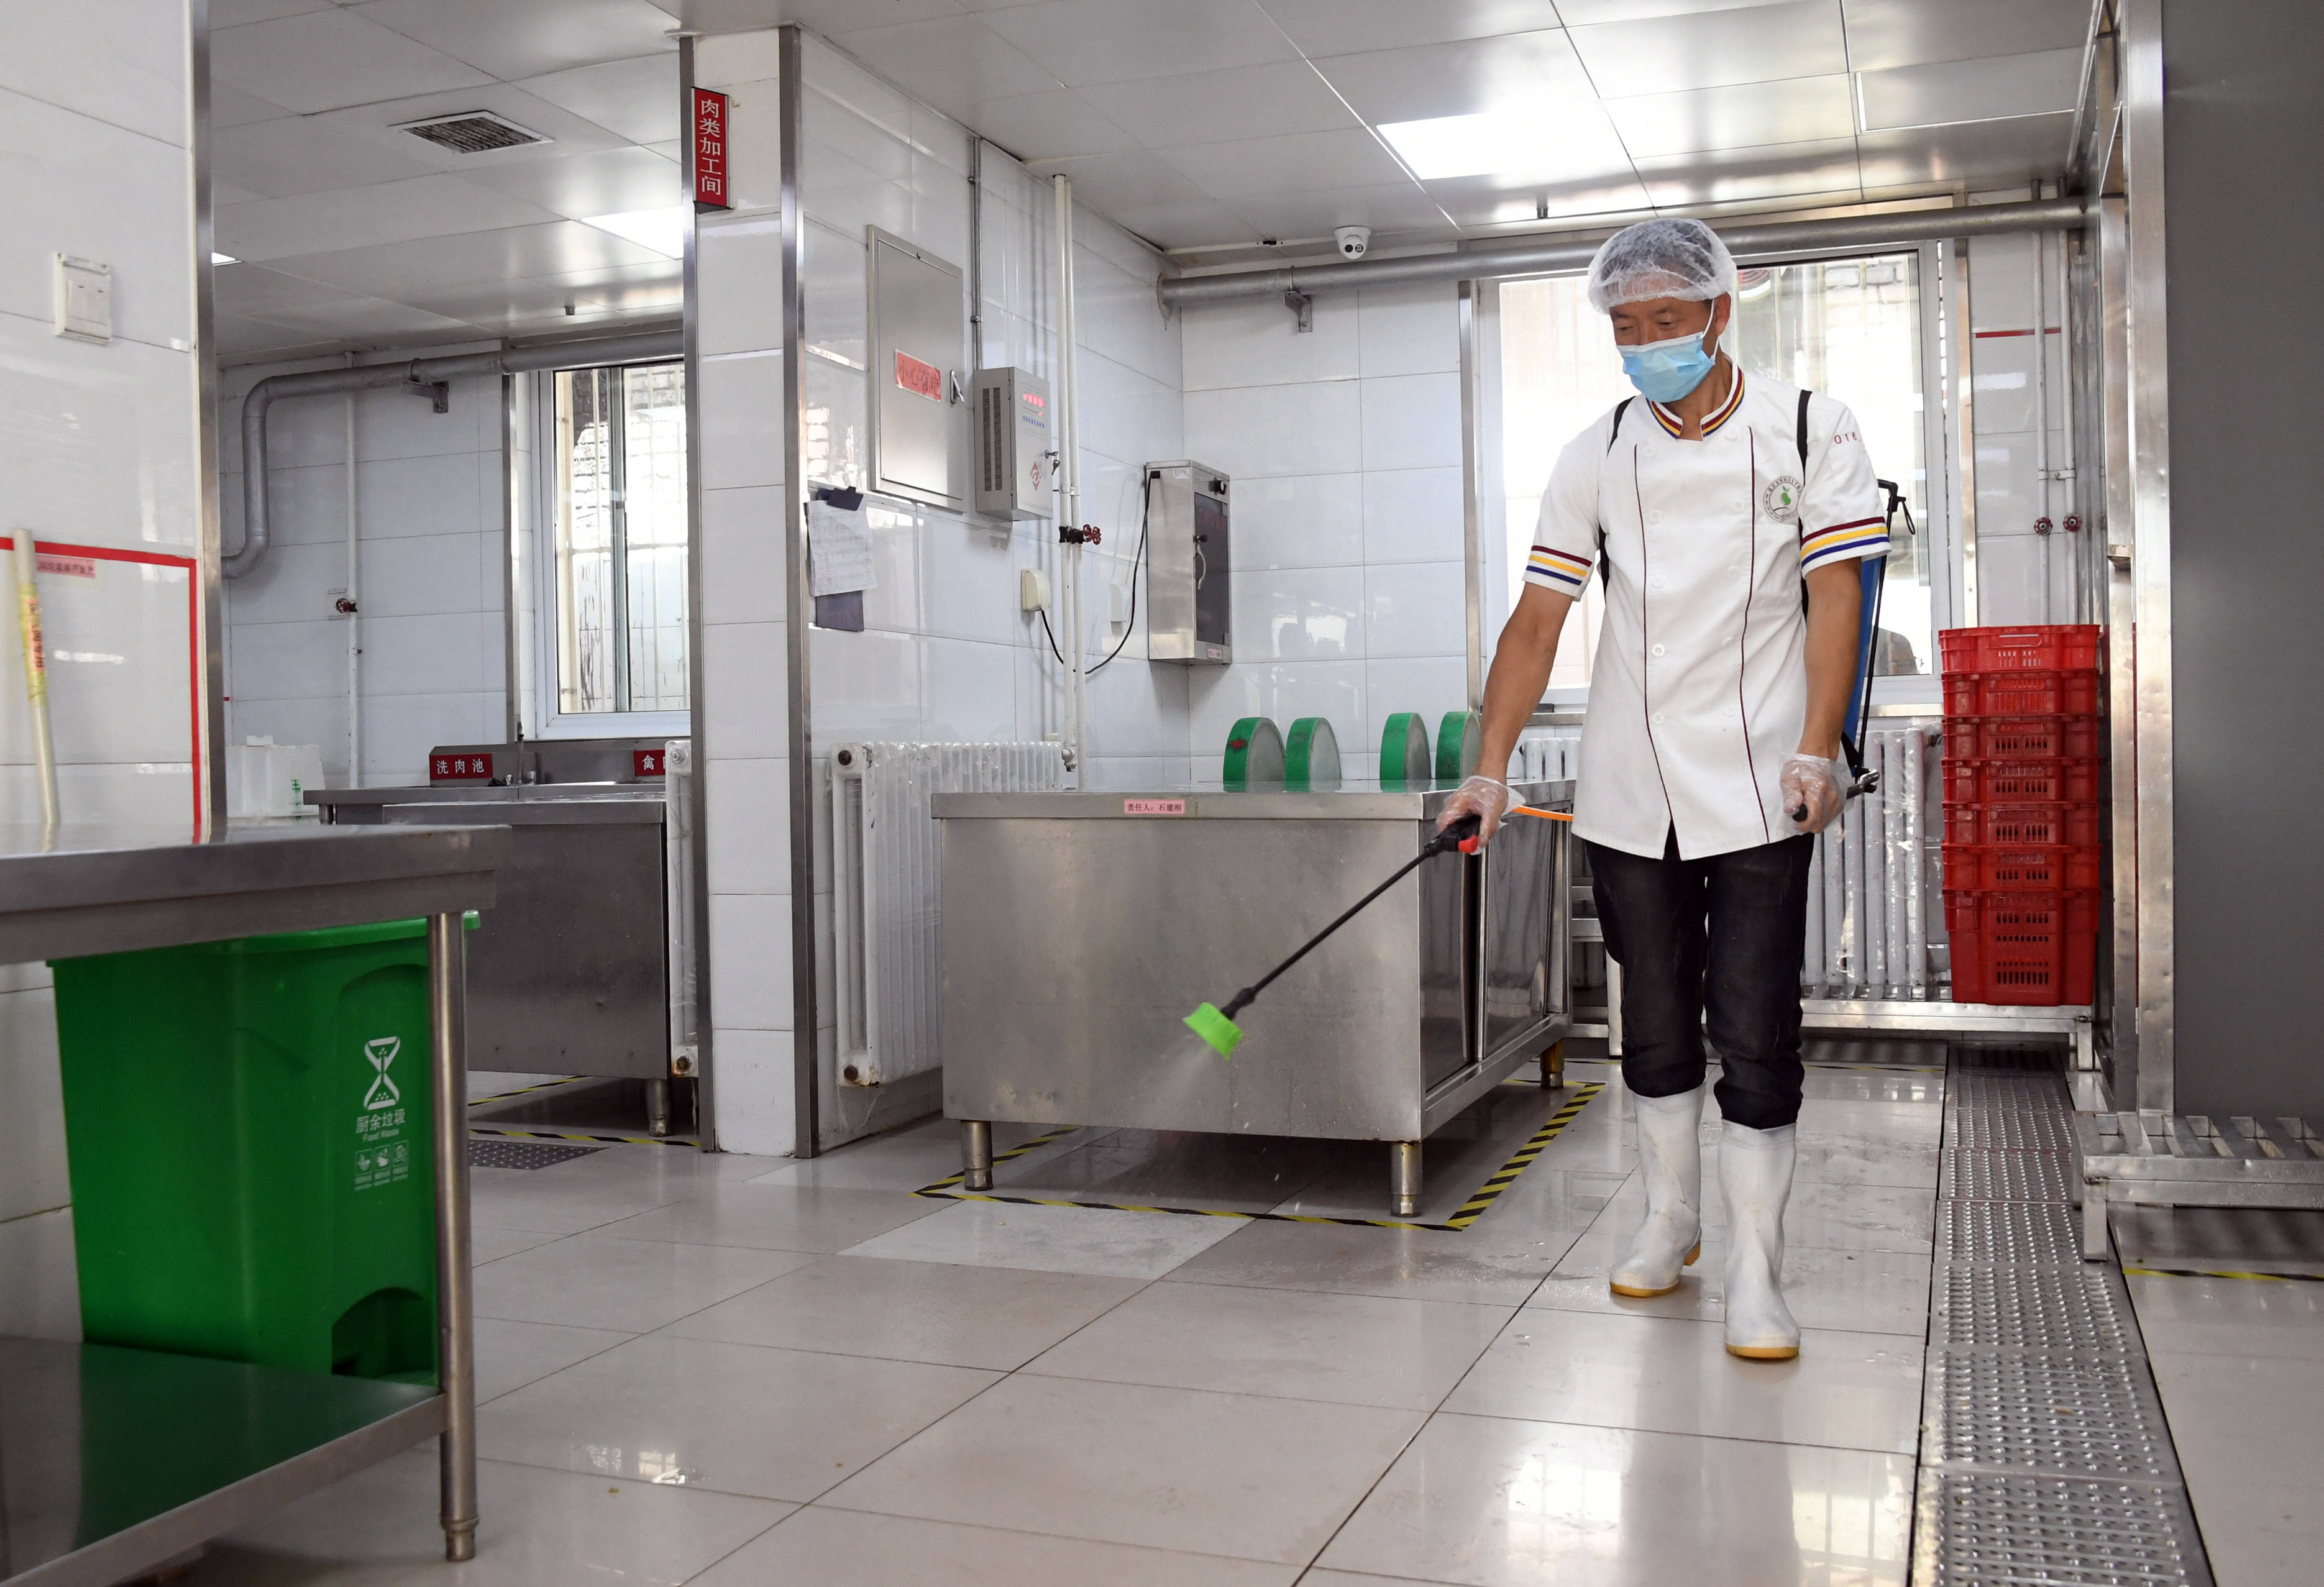 8月26日,在北京市海淀区太平路小学,工作人员对食堂厨房进行消毒.